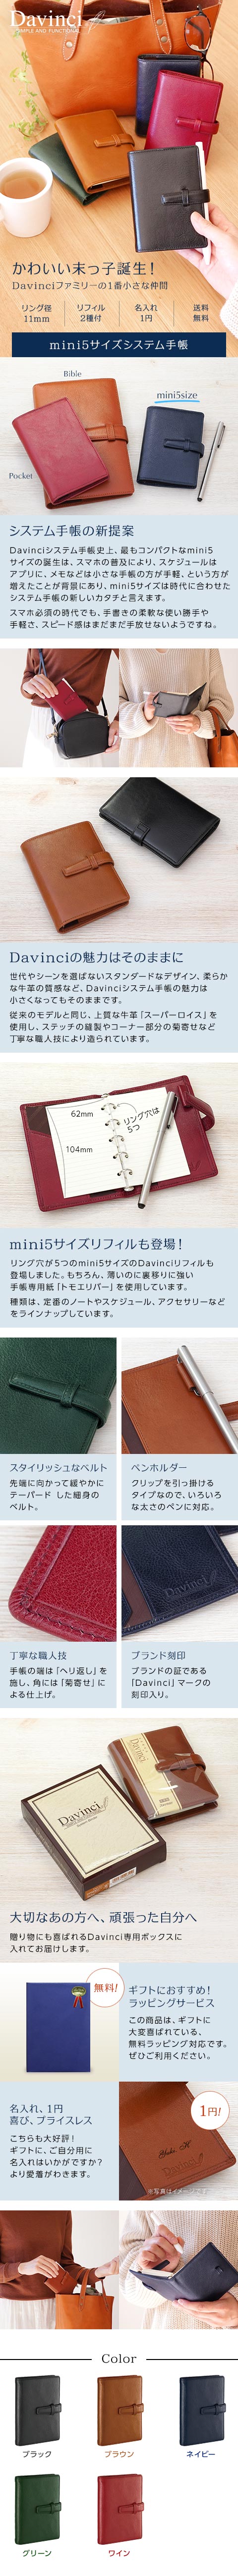 mini5サイズシステム手帳DPM3037